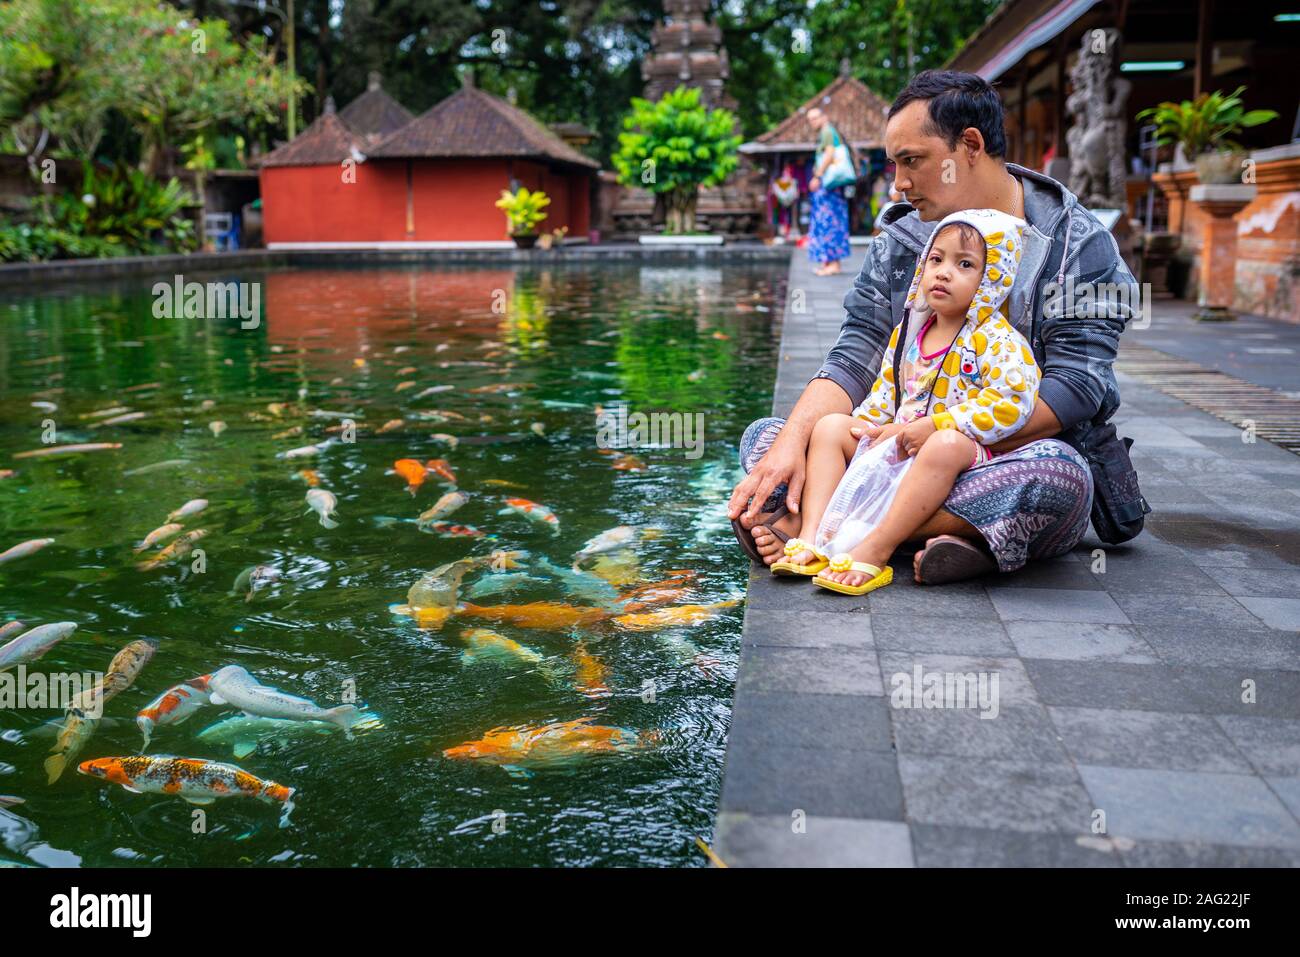 Bali, Indonesien, September 4, 2017: Junge und sein Vater in der Nähe einen Teich mit Koi-Karpfen und Tirta Empul Tempel. An einem bewölkten Nachmittag genommen. Stockfoto